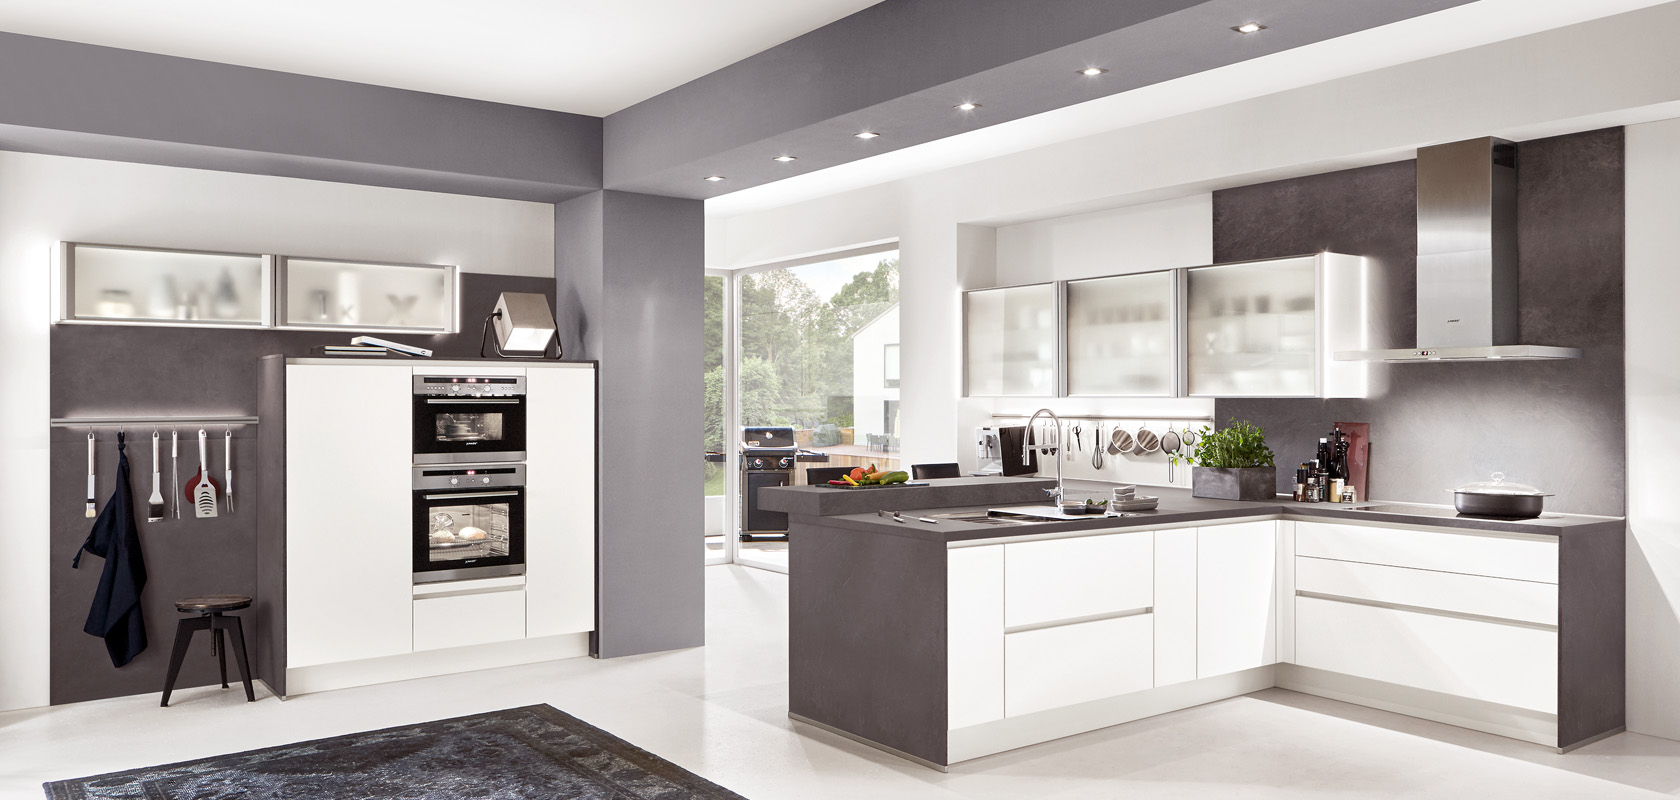 Cocina moderna con gabinetes de alto brillo, electrodomésticos de acero inoxidable y un diseño elegante con una combinación de tonos blancos y grises, que ofrece un aspecto contemporáneo.